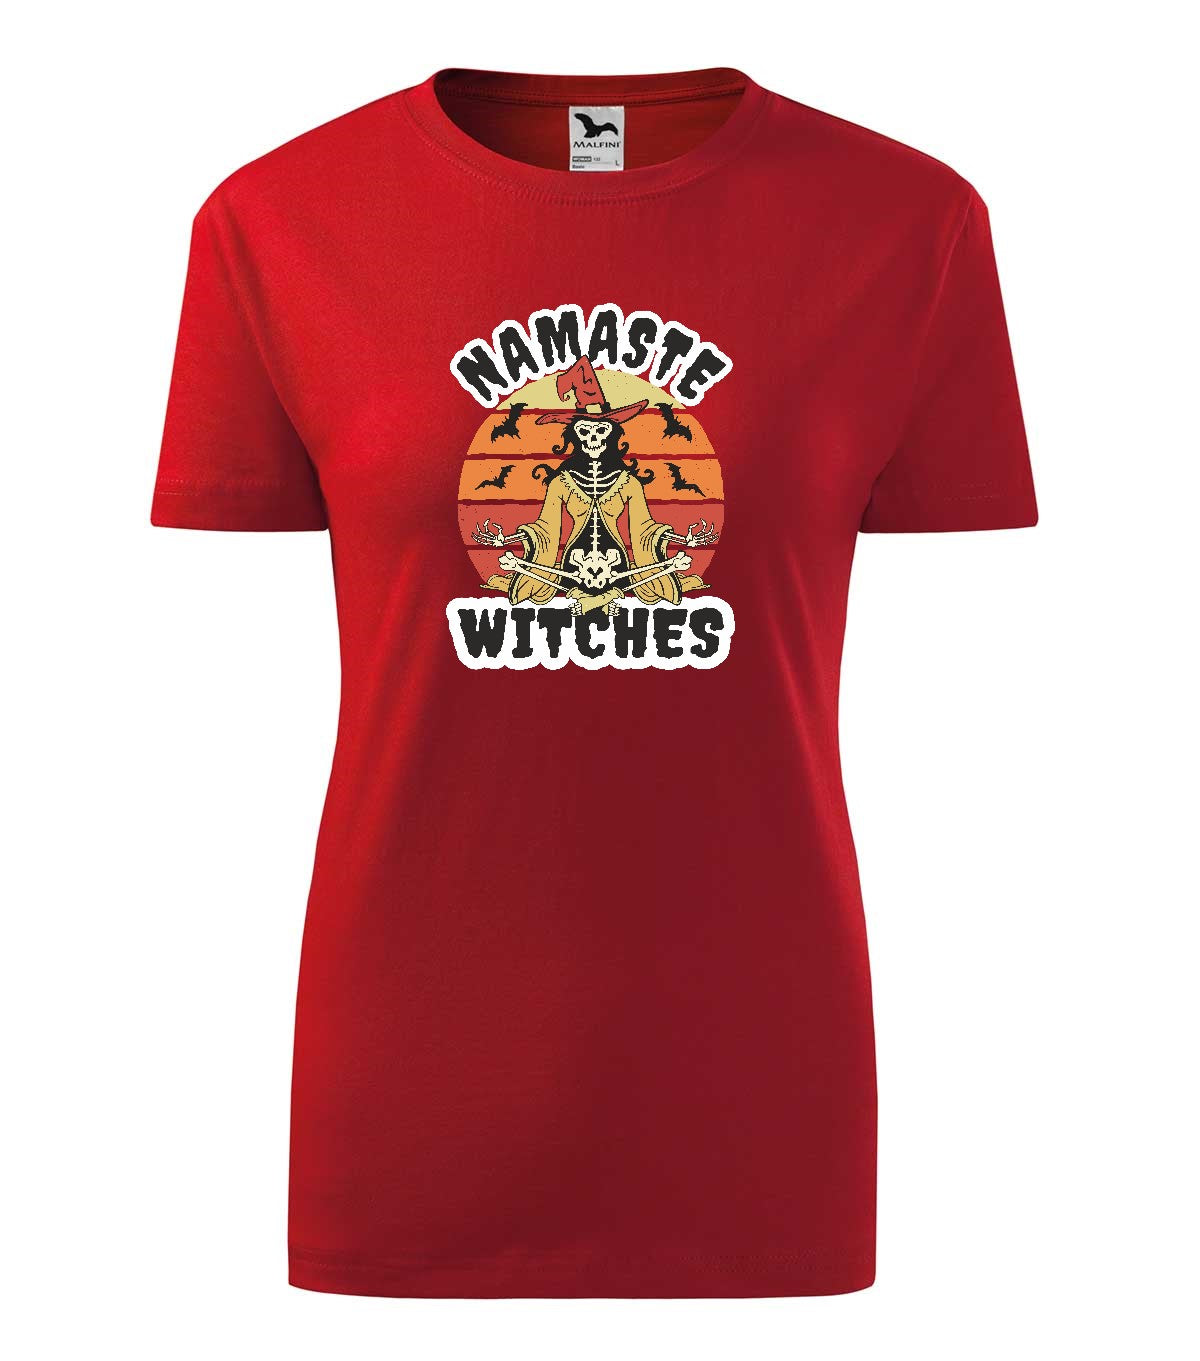 Namaste Witches női technikai póló